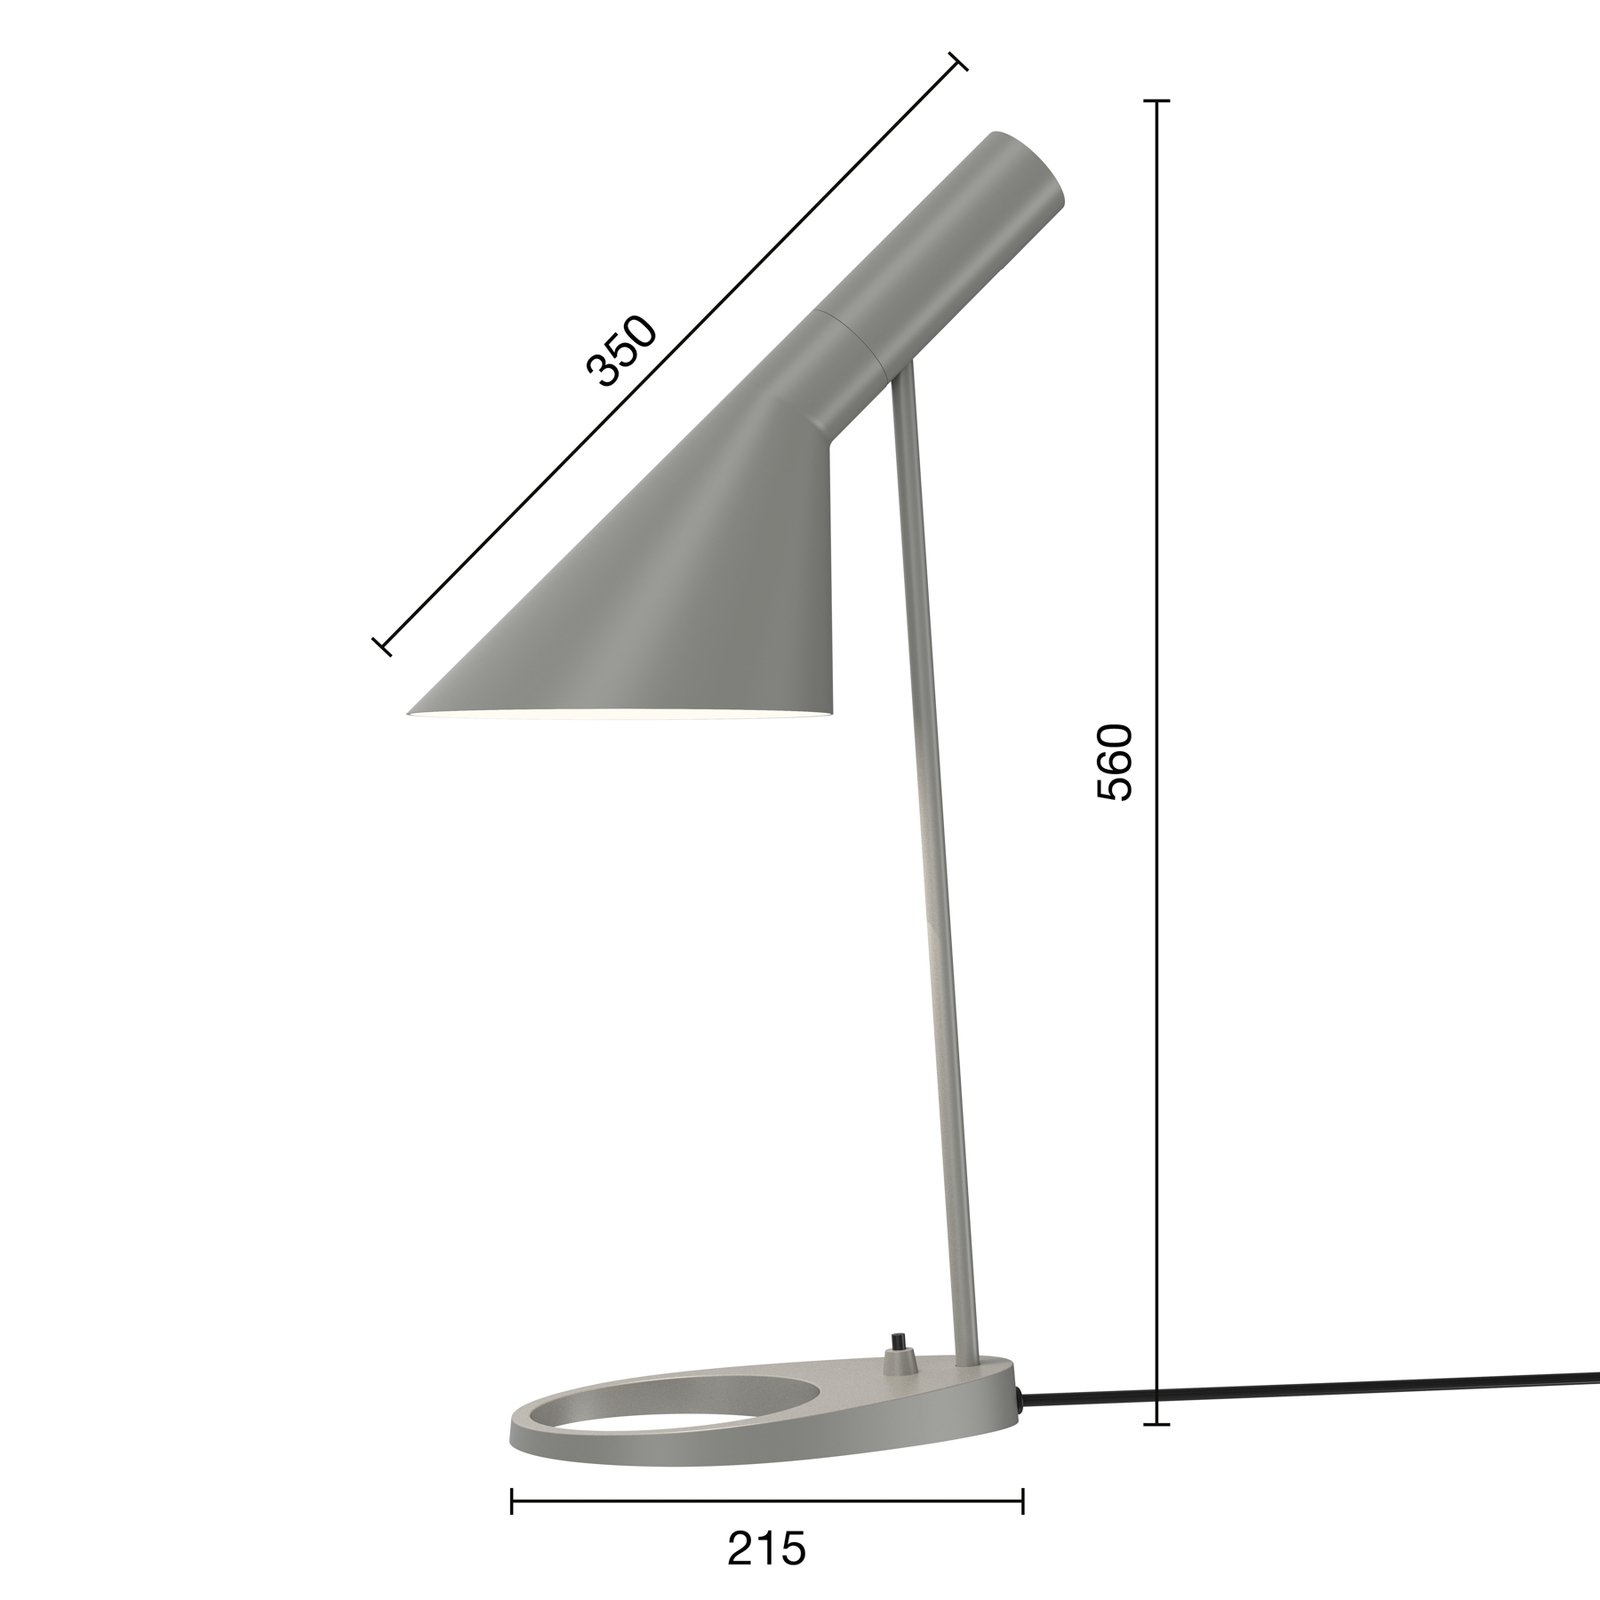 Louis Poulsen AJ Mini designer table lamp grey